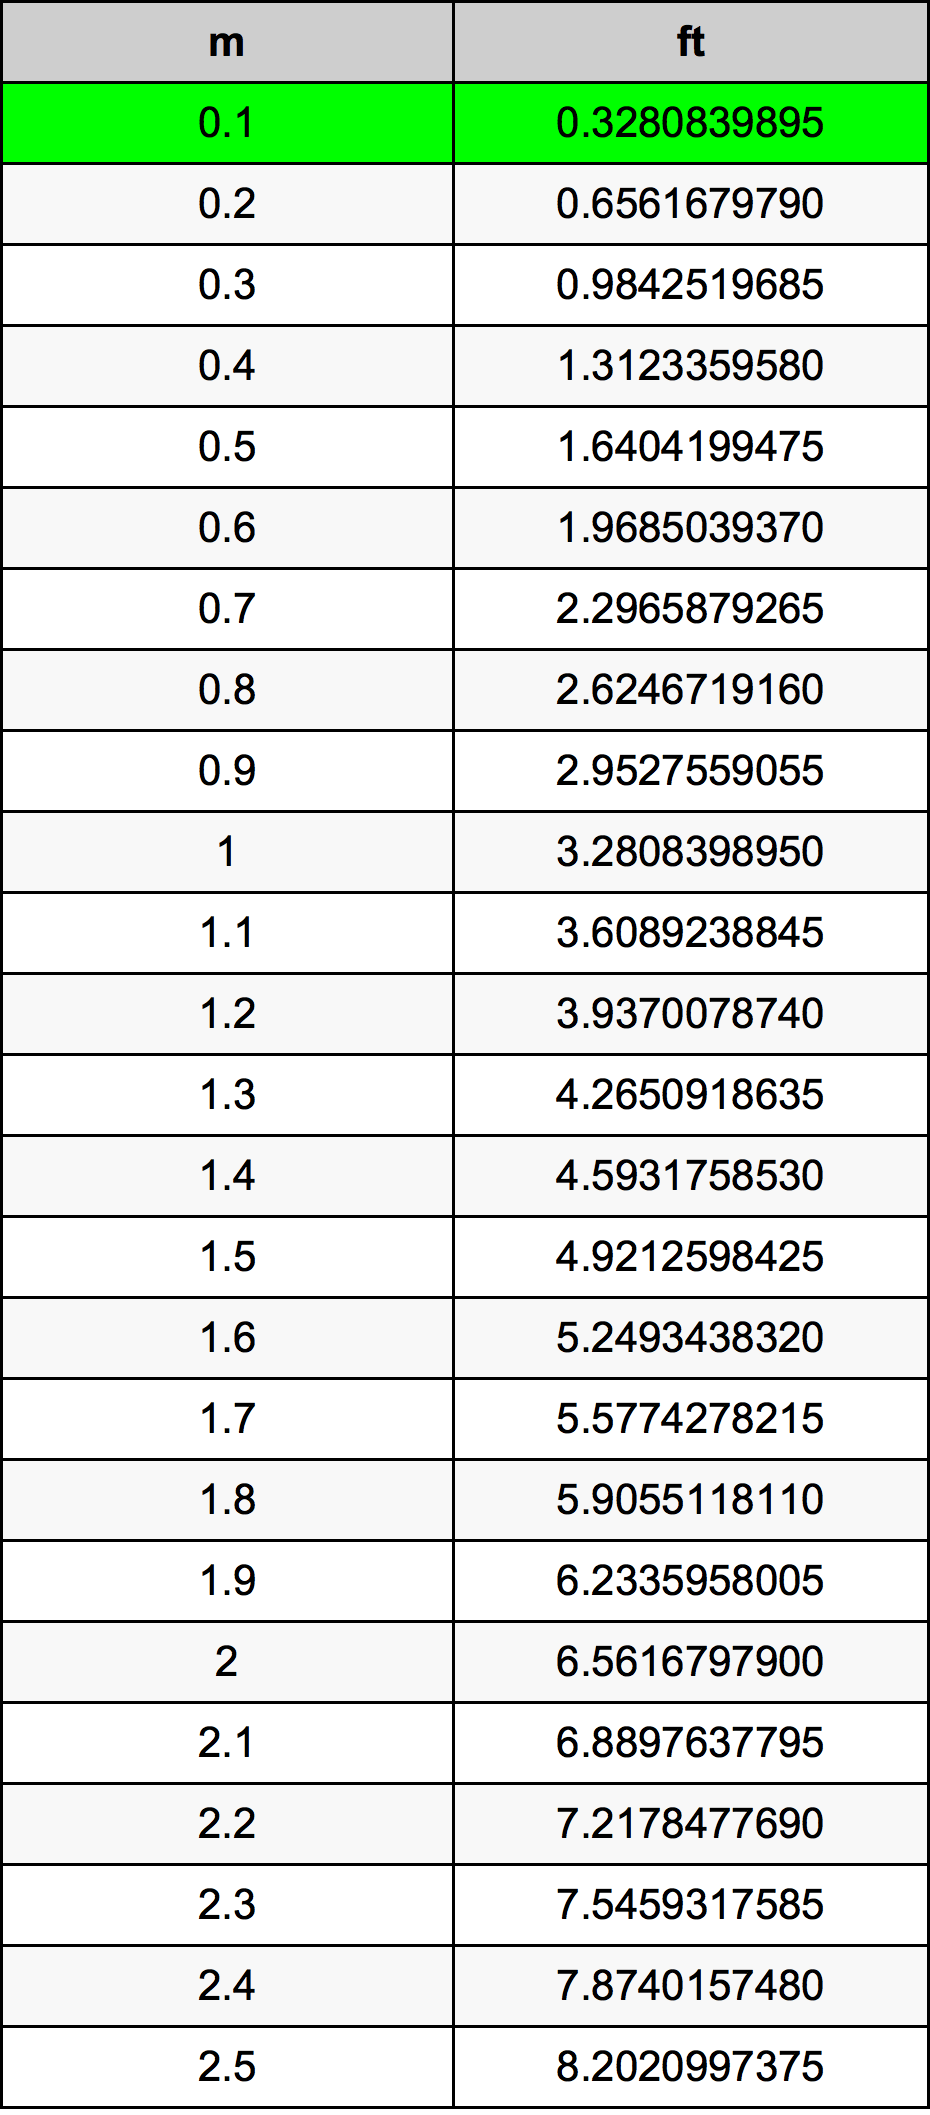 0.1 Metru tabelul de conversie